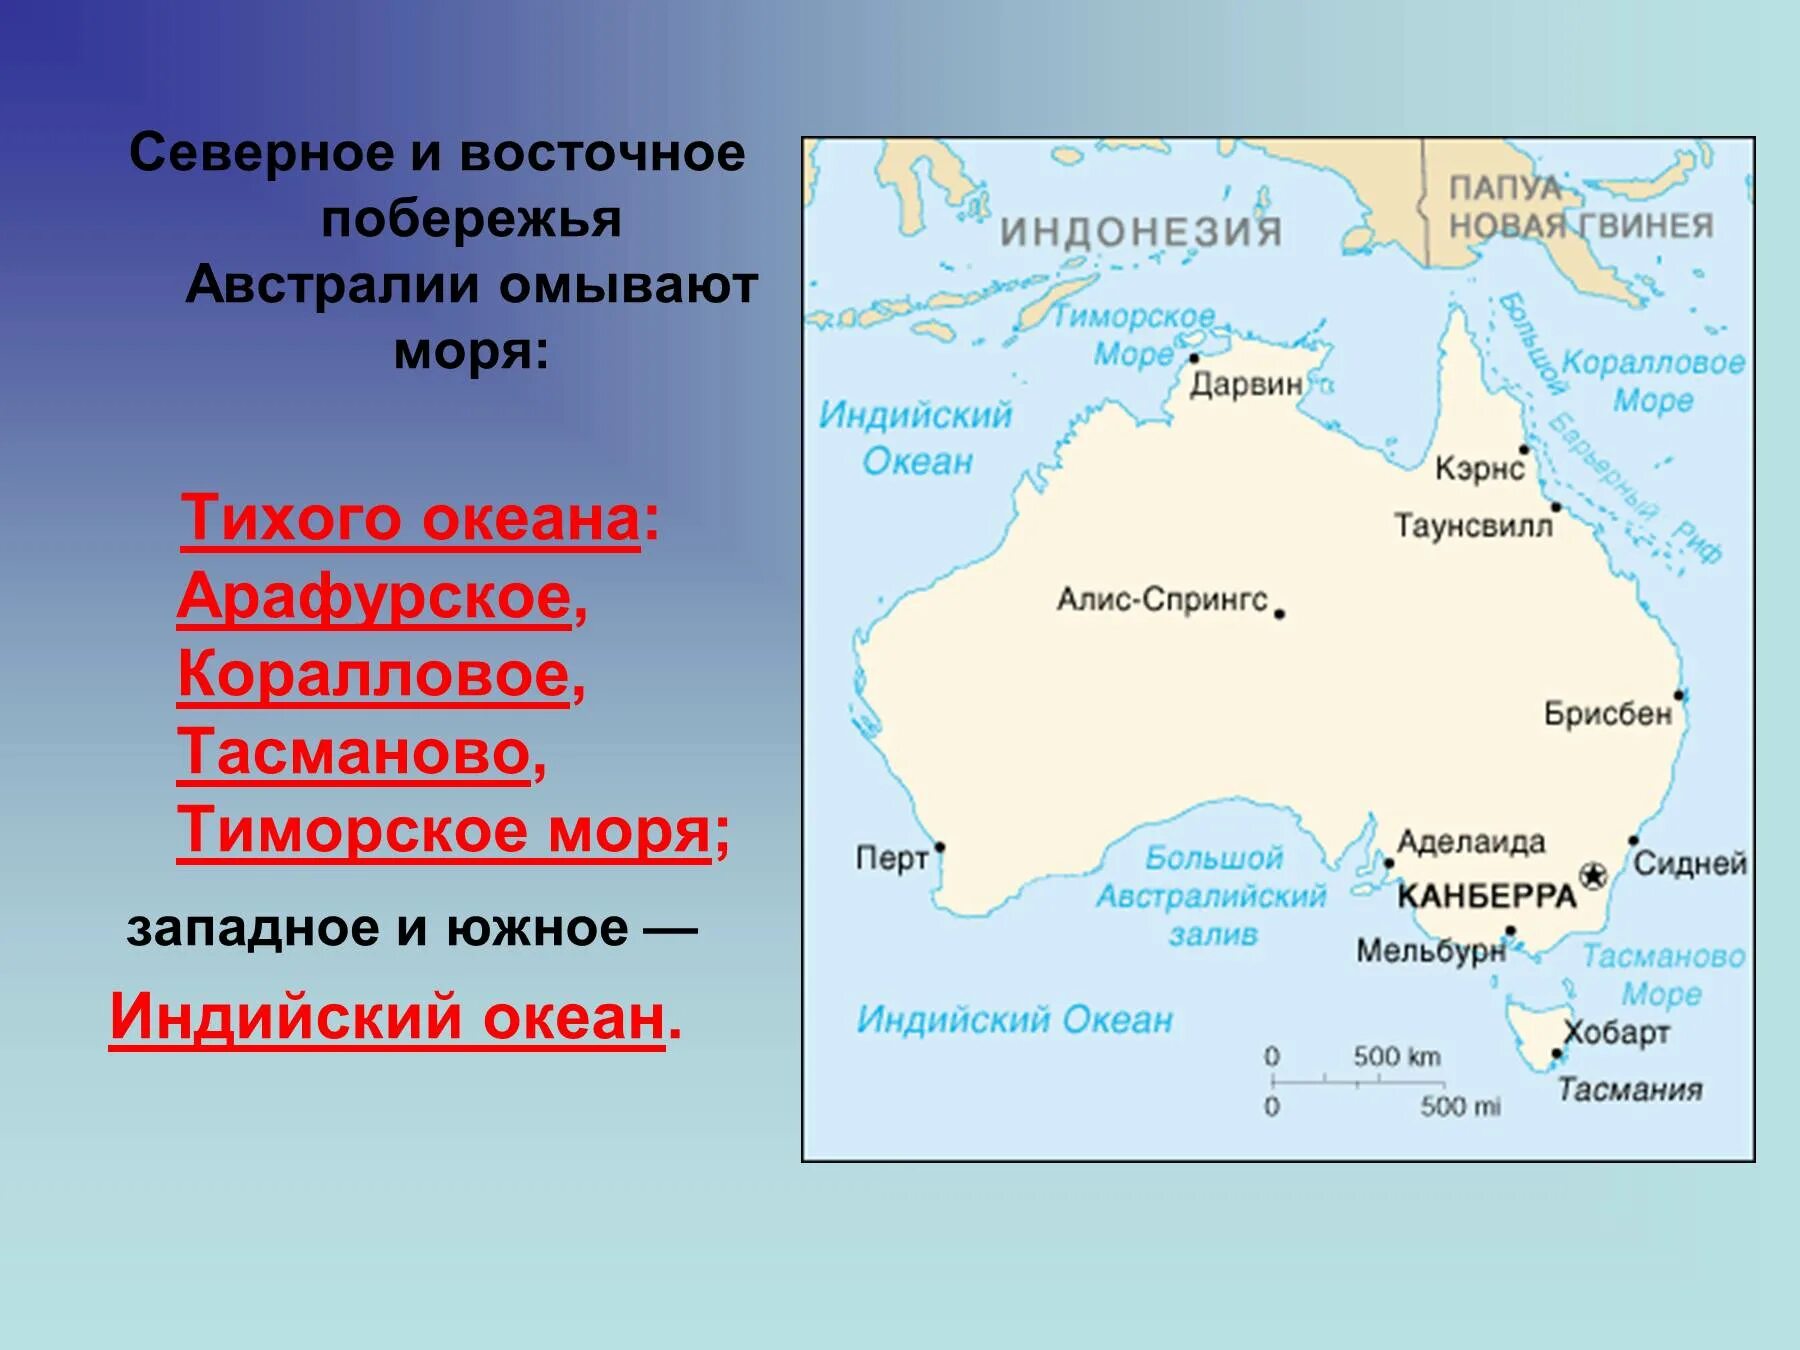 4 какими океанами омываются. Моря: тасманово, Тиморское, коралловое, Арафурское.. Тасманово море на карте Австралии. Австралия моря: Тиморское, Арафурское, коралловое, тасманово.. Австралия моря и океаны омывающие материк.